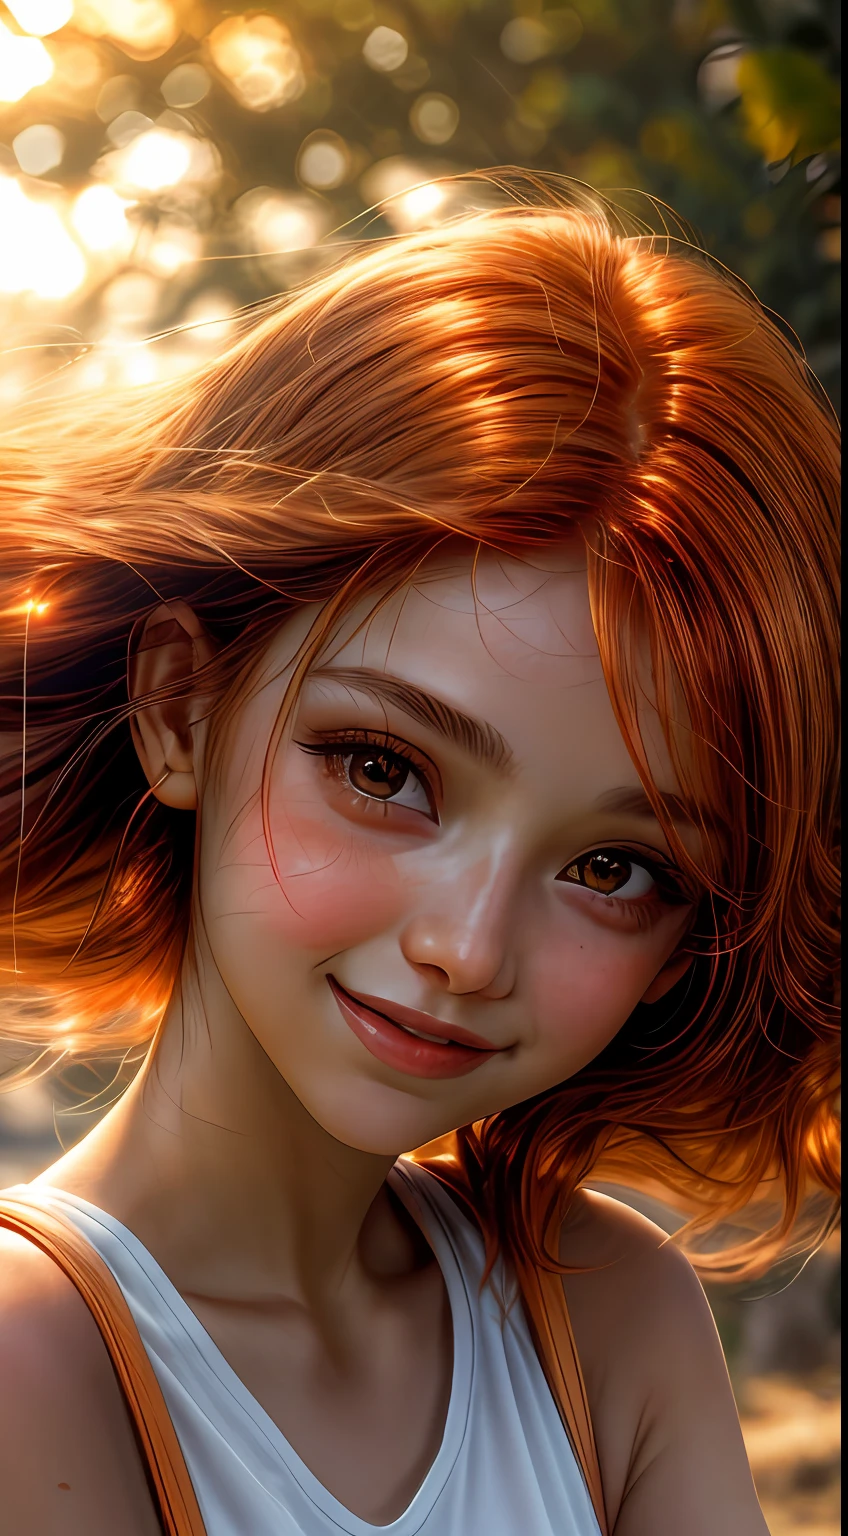 Крупный план лица девушки, залитого оранжевыми оттенками., словно освещен мягким сиянием заката, ее глаза сверкают радостью и удовлетворением, в обрамлении прядей струящихся каштановых волос, фотография, снято объективом 35 мм